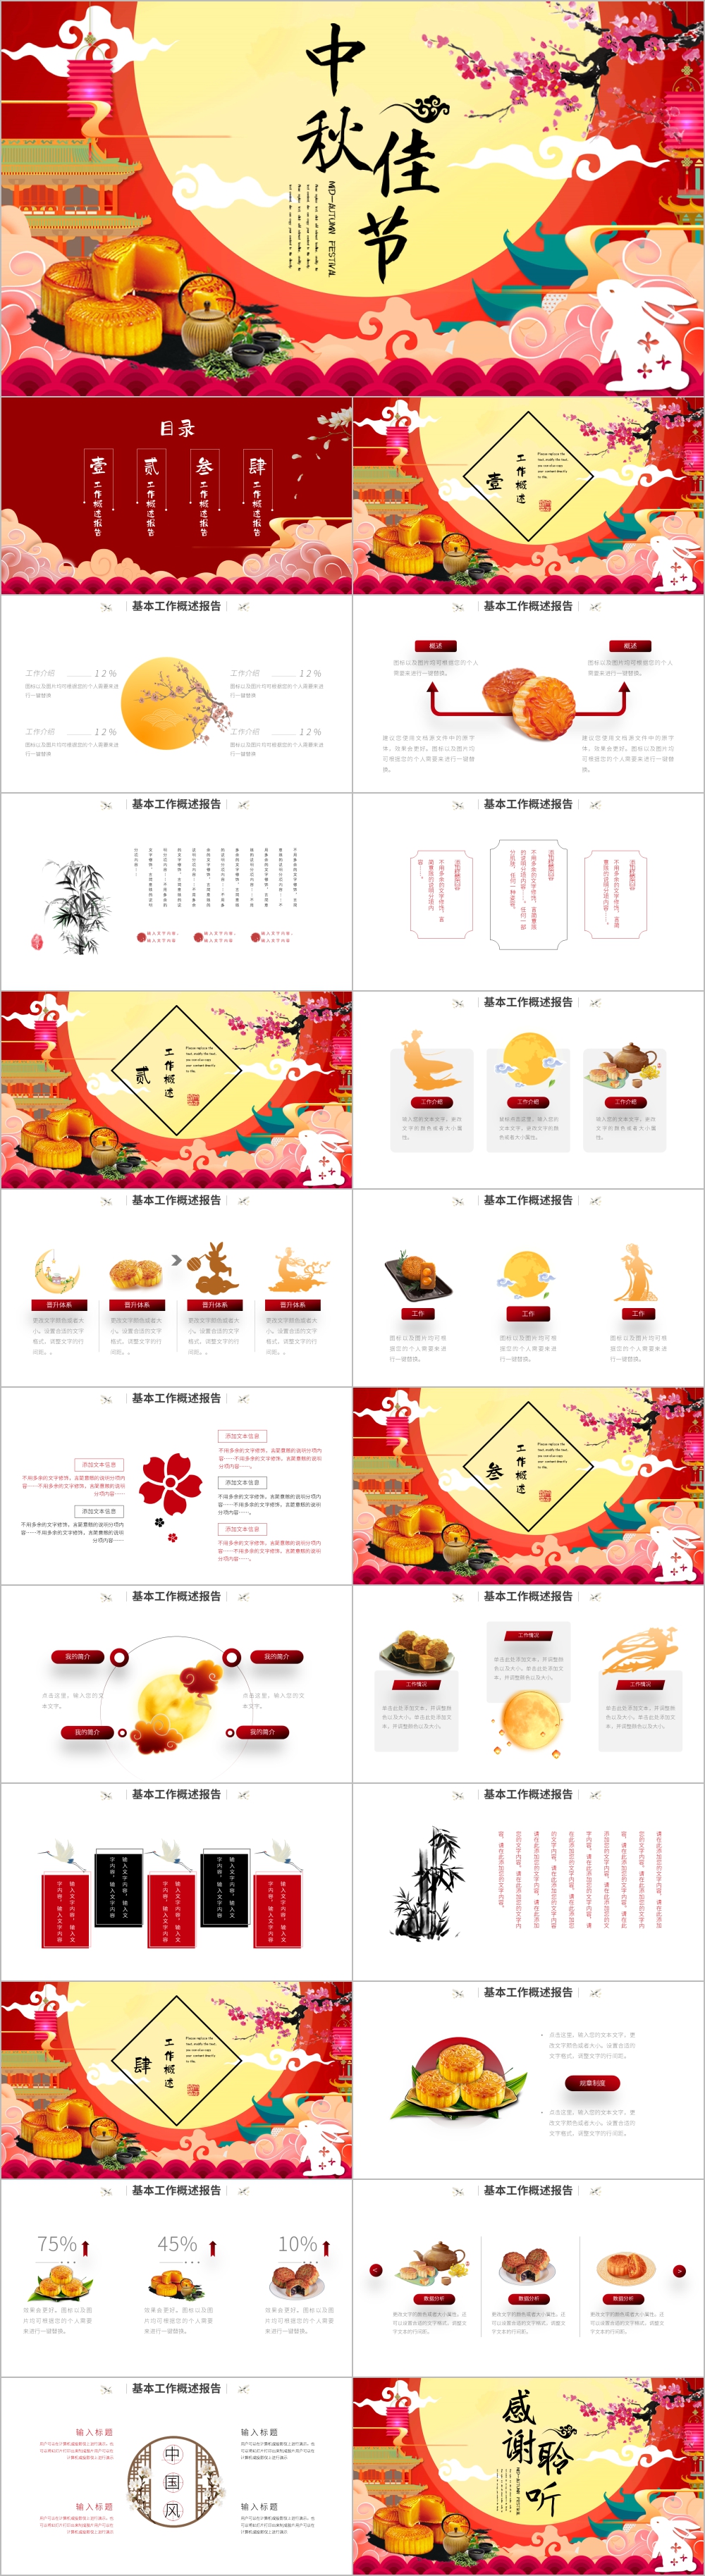 红色中国风传统节日团圆节中秋节PPT模板